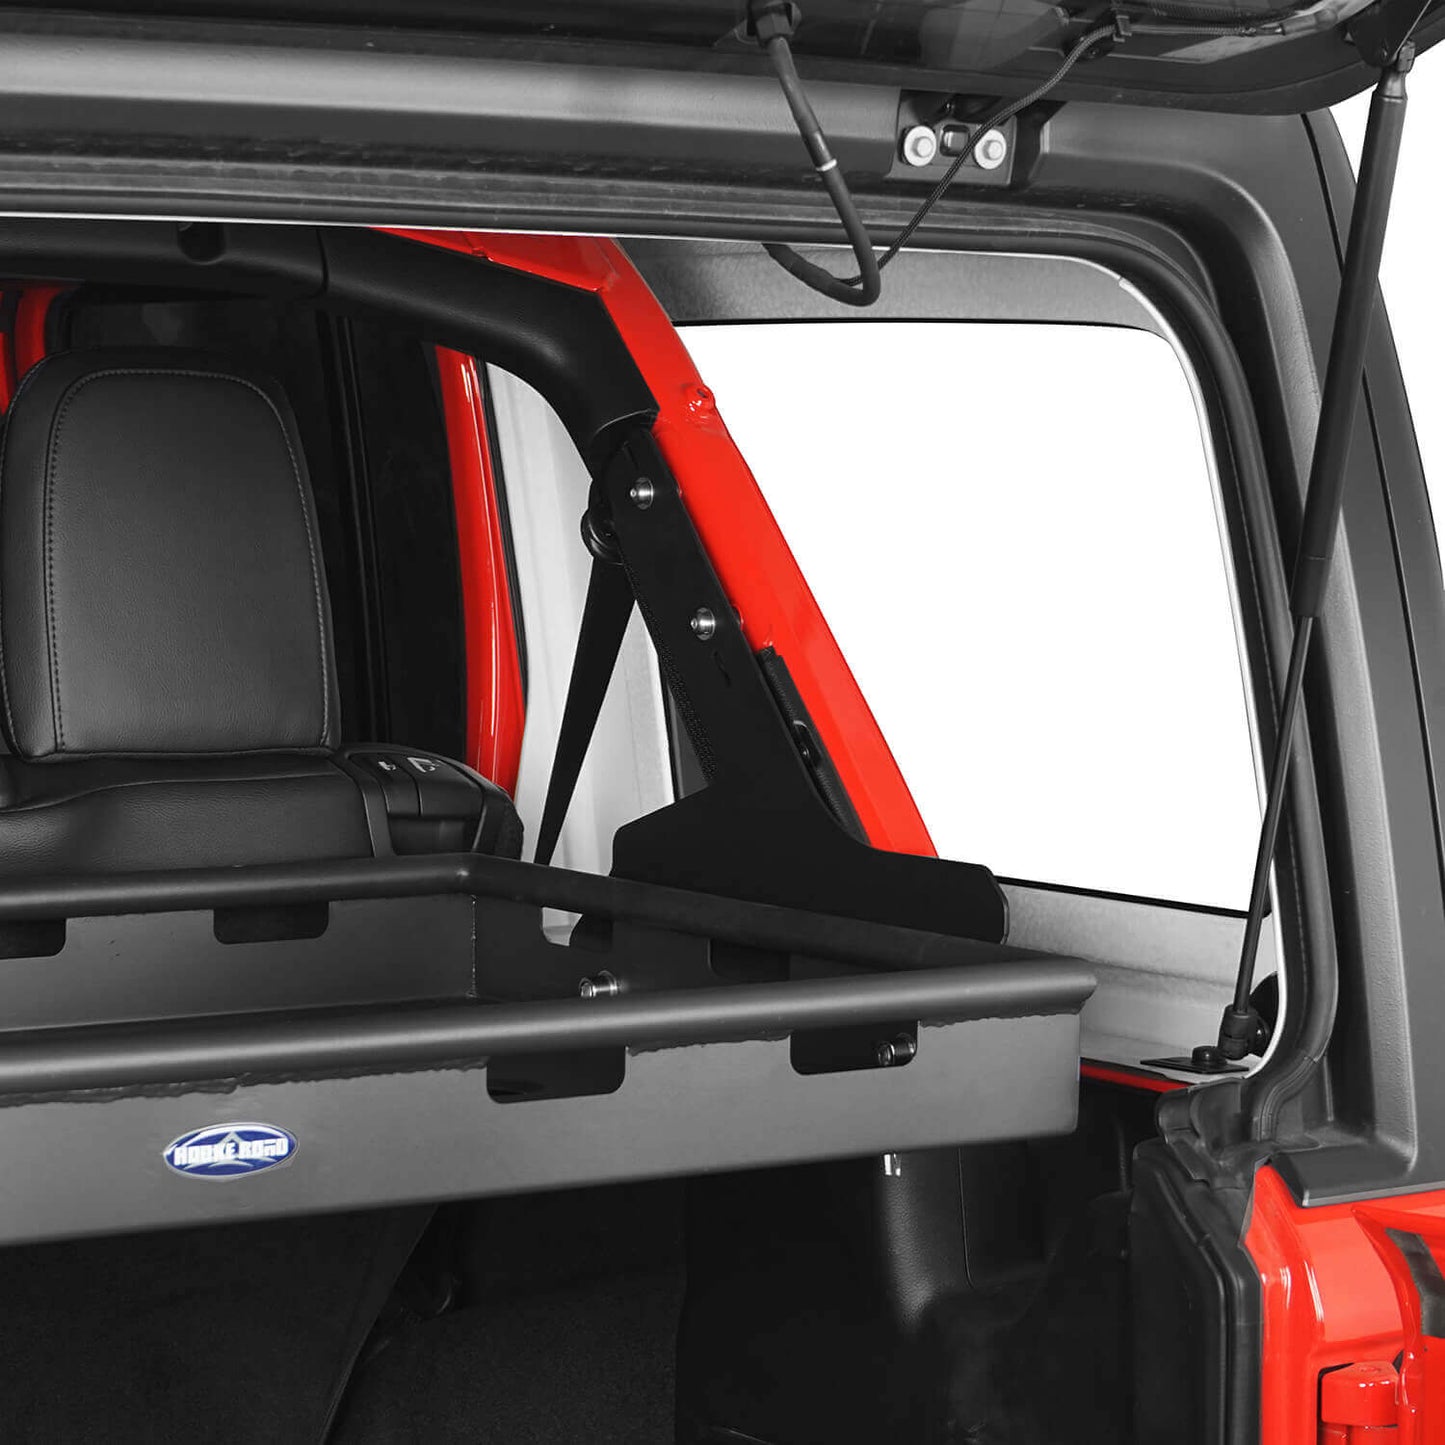 Interior Cargo Rack for Jeep Wrangler JL Unlimited 4-Door Hardtop & Sky One-Touch Power Top - Ultralisk 4x4 u3017 4